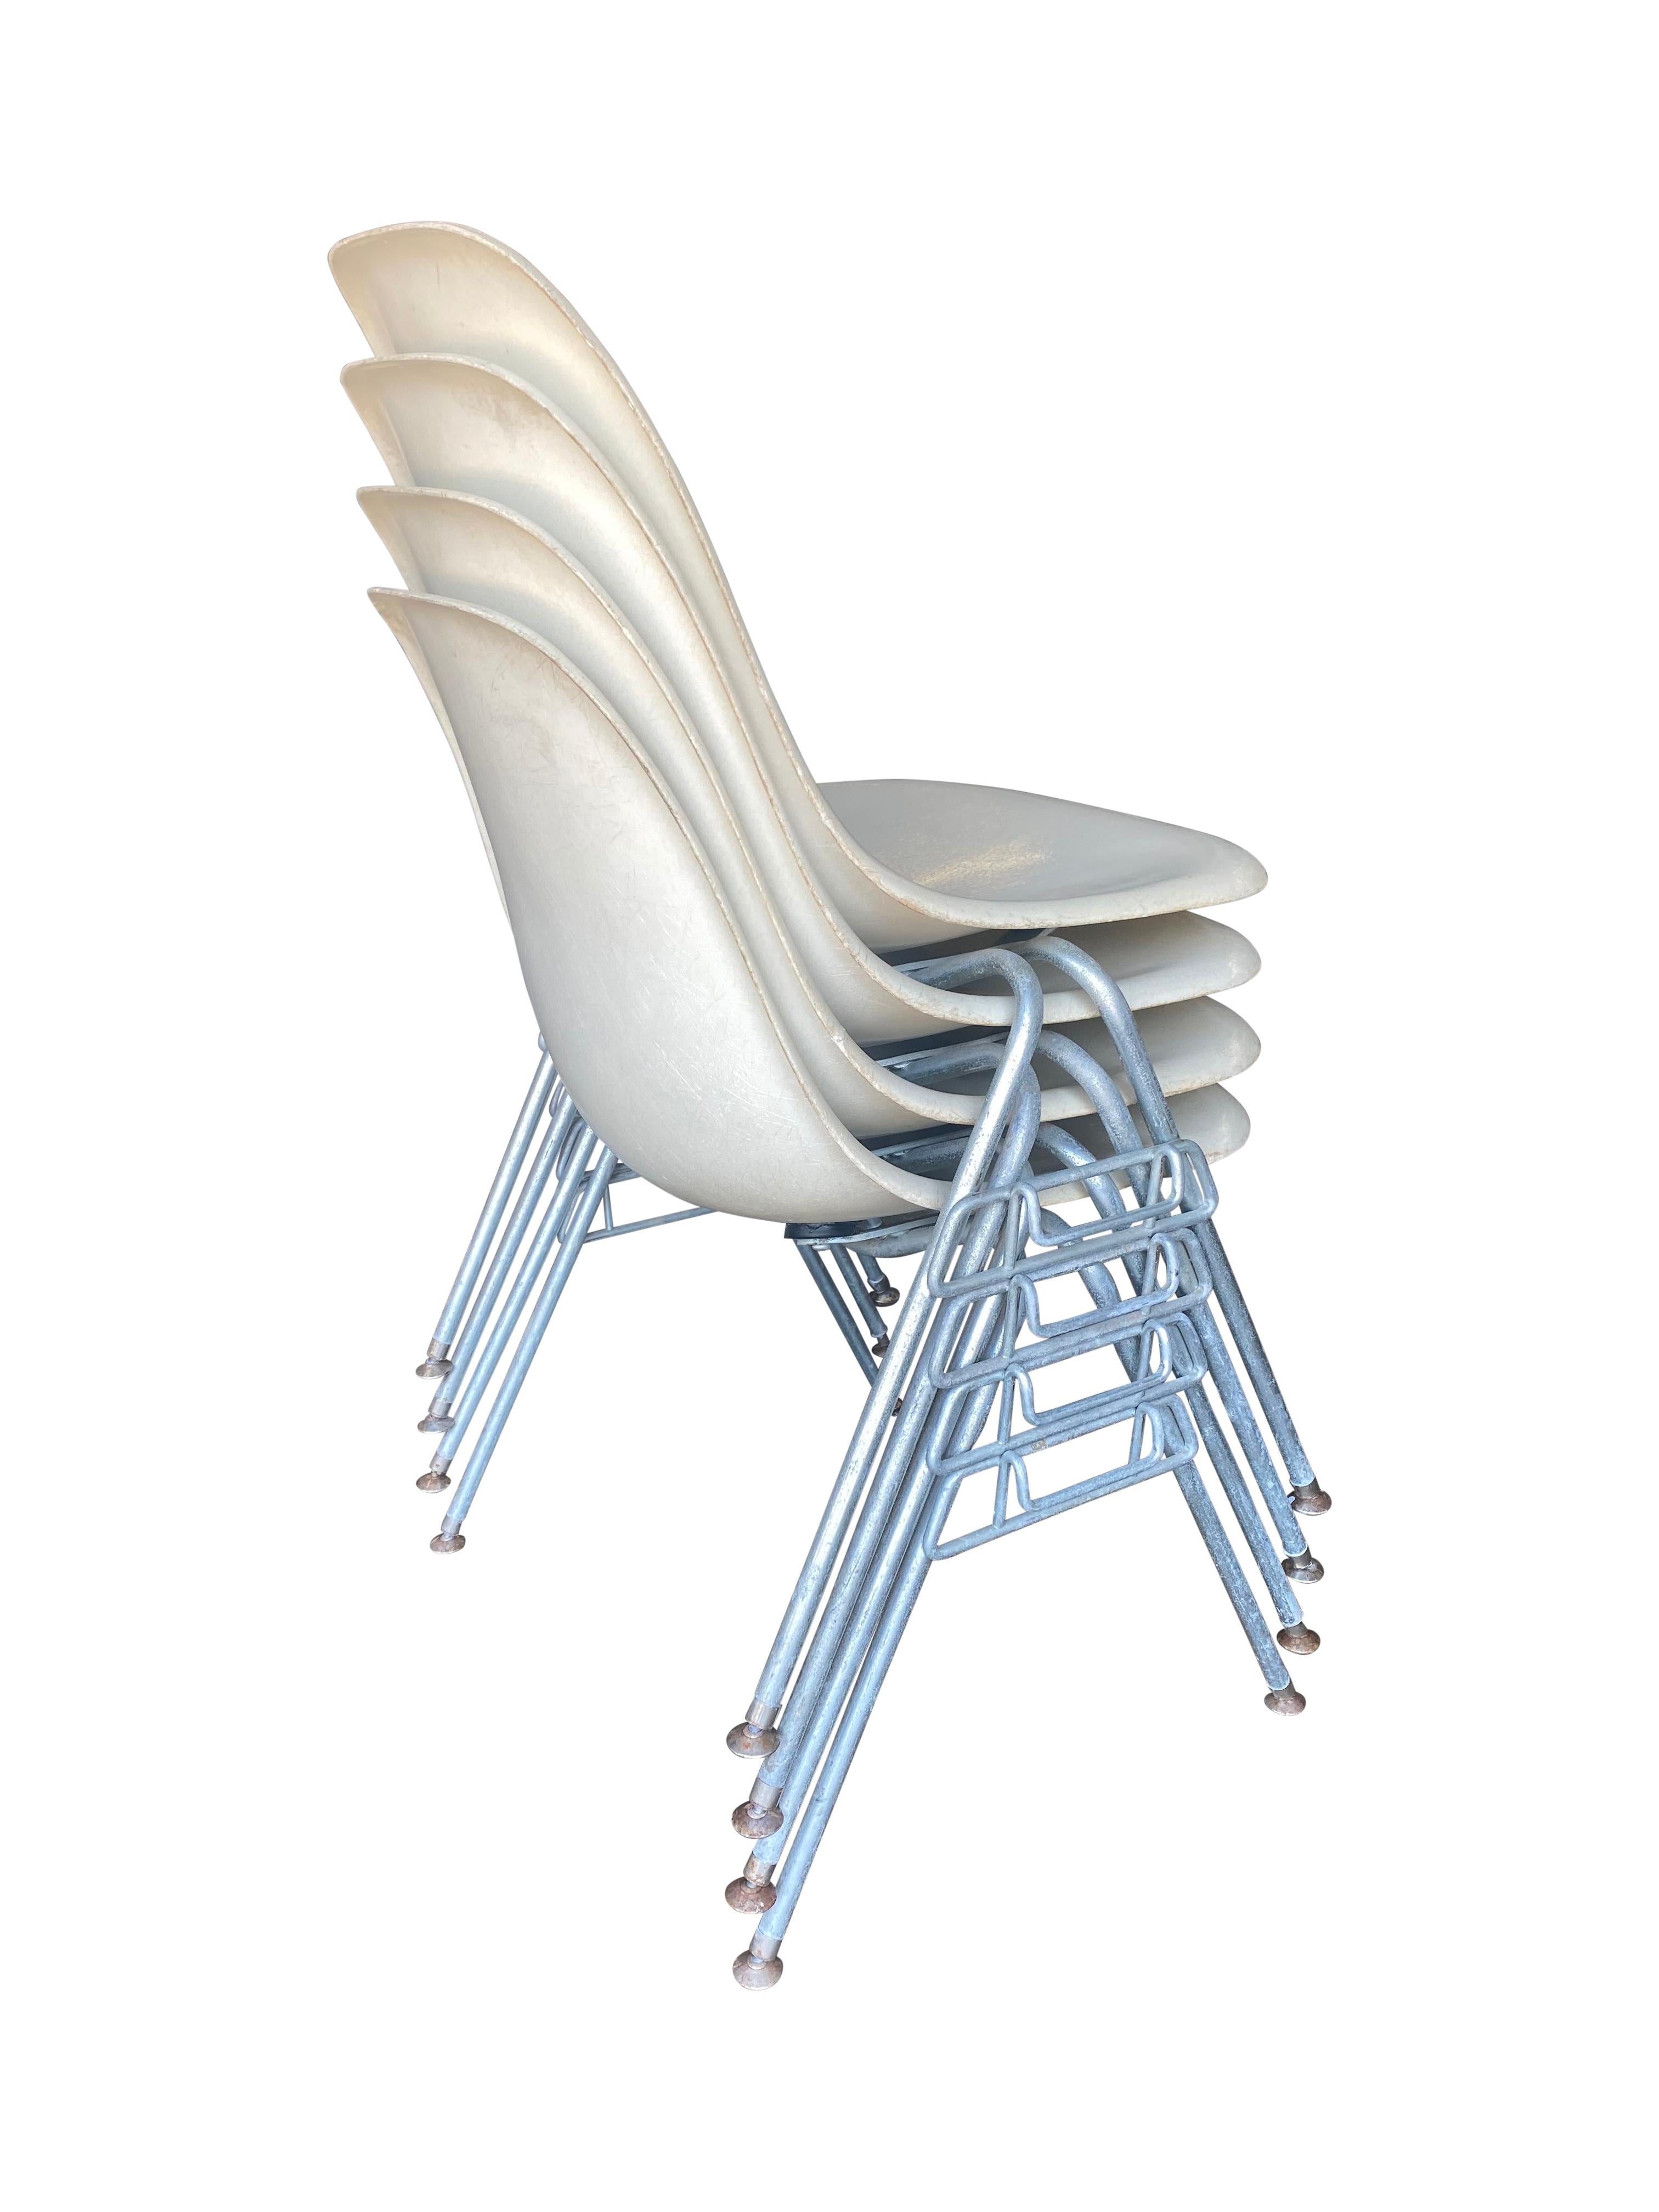 fiberglass dining chair